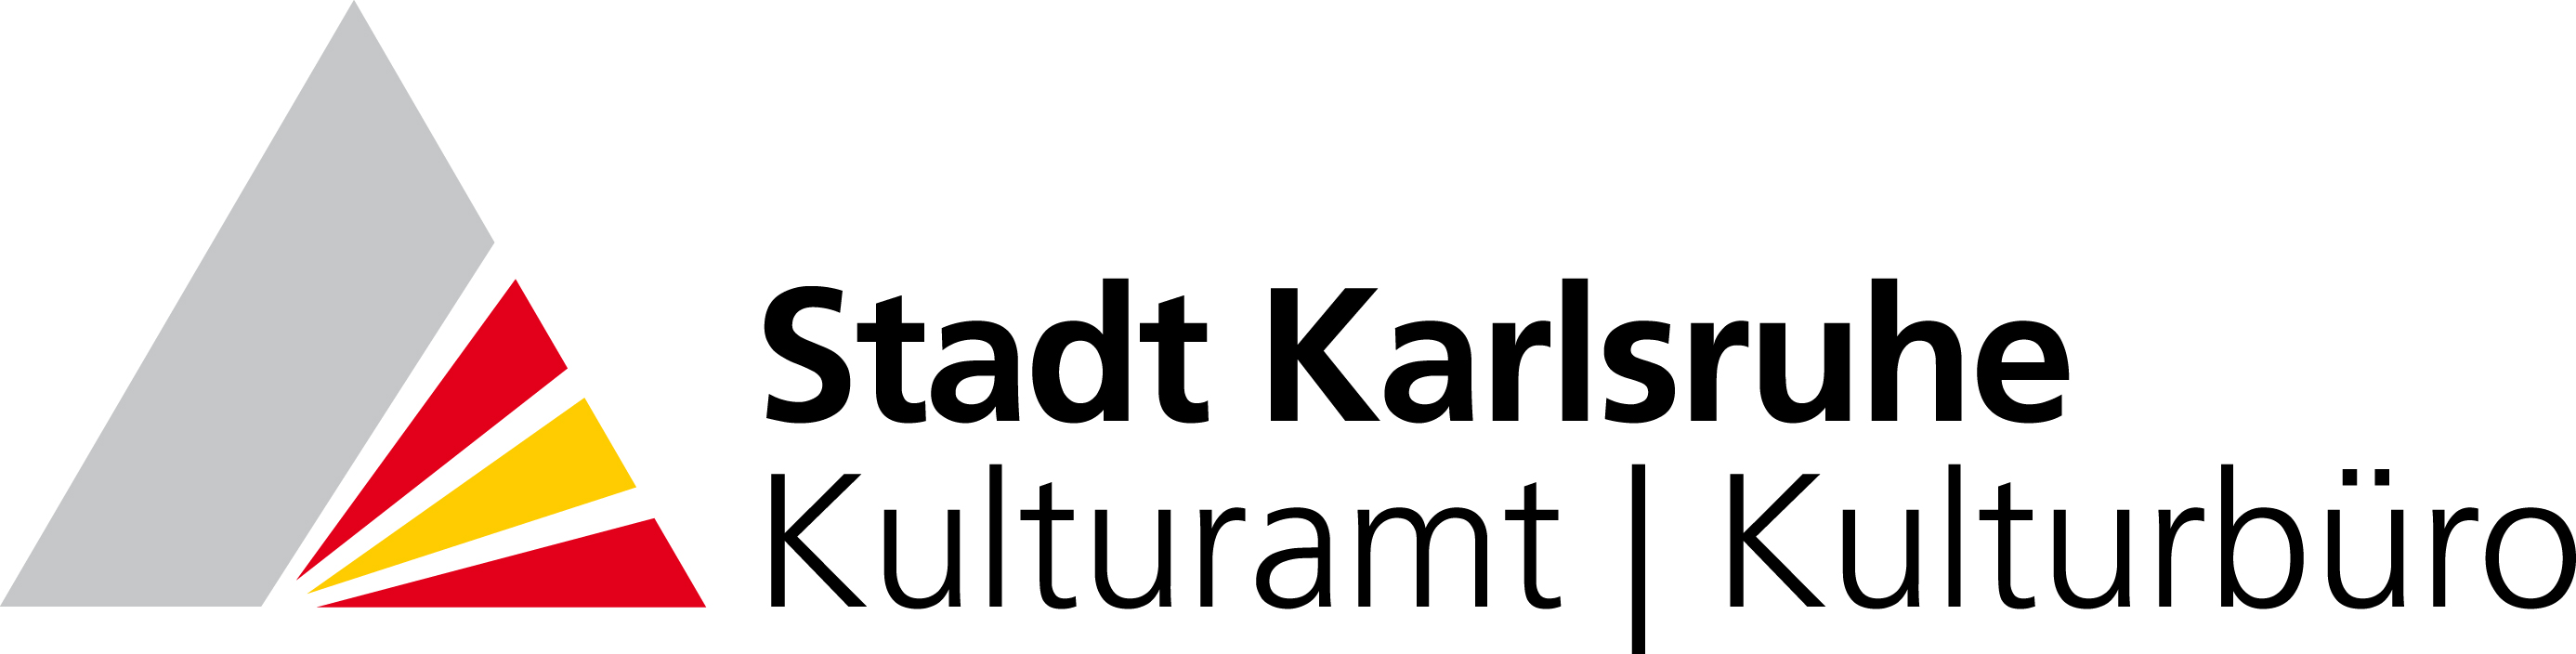 Logo des Kulturamt/Kulturbüro Stadt Karlsruhe